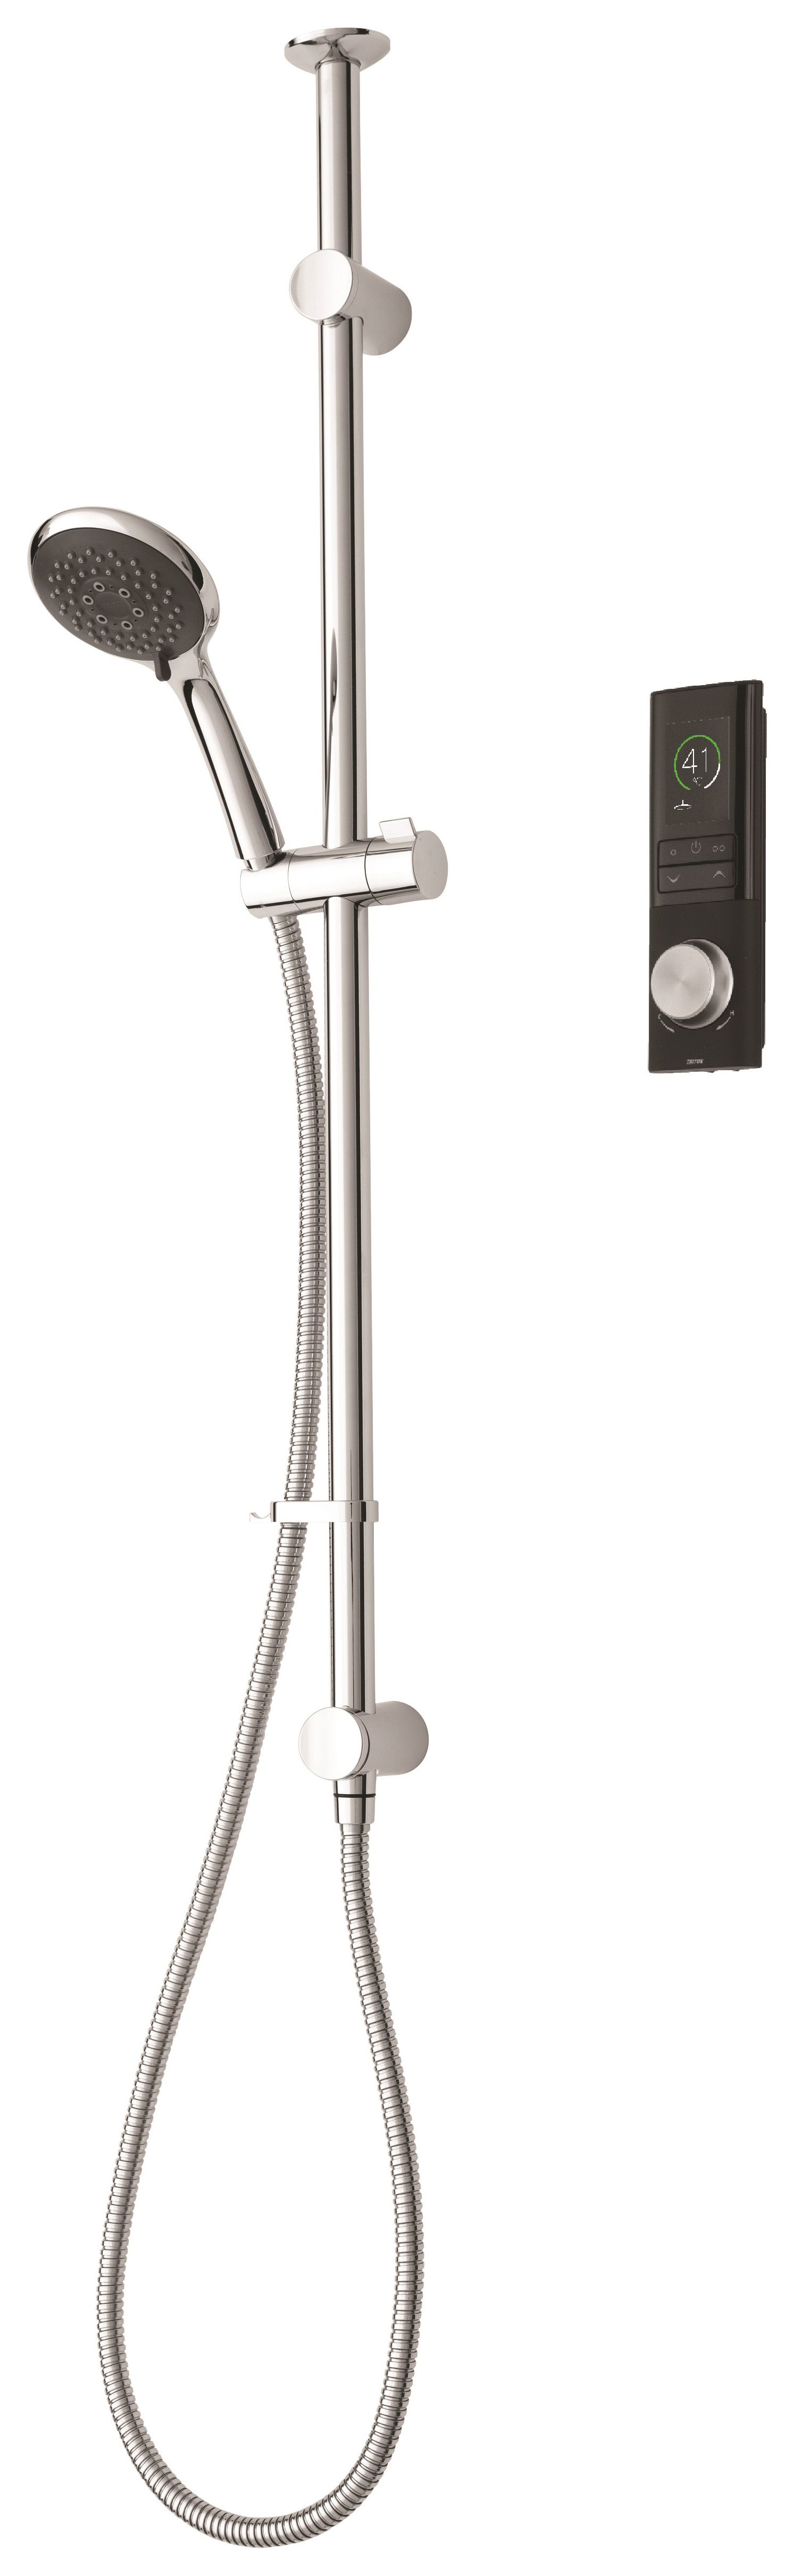 Triton Home Digital Mixer Shower with Riser Rail